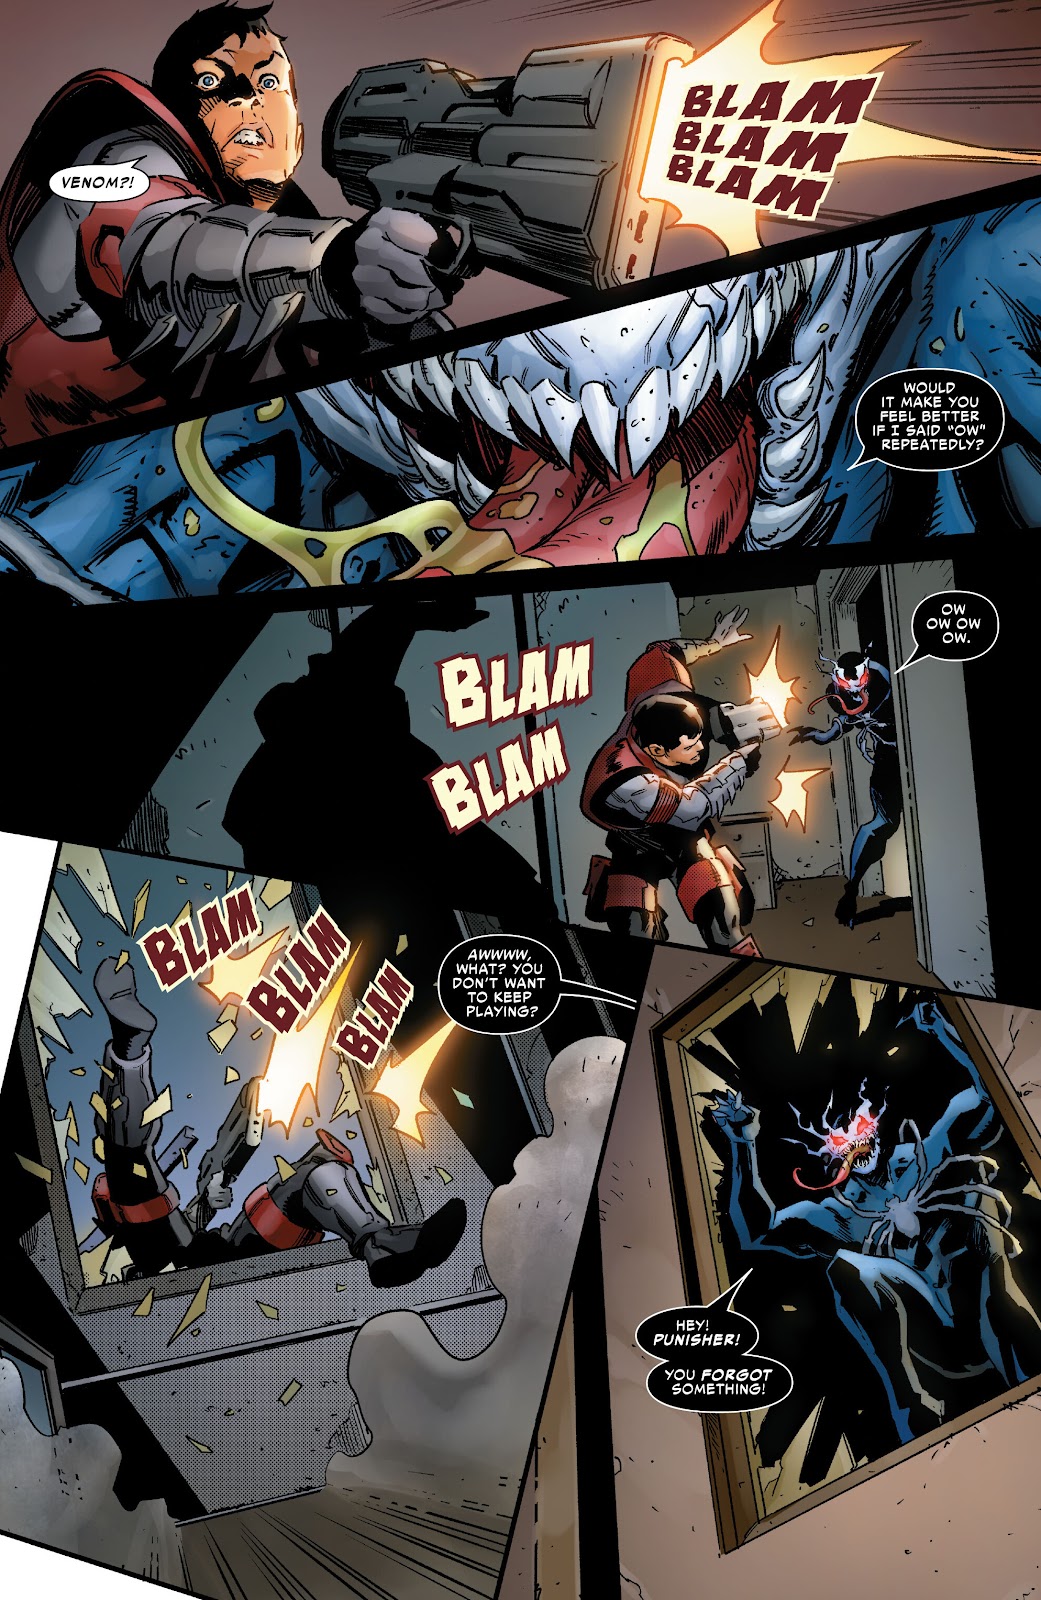 Symbiote Spider-Man 2099 issue 1 - Page 28